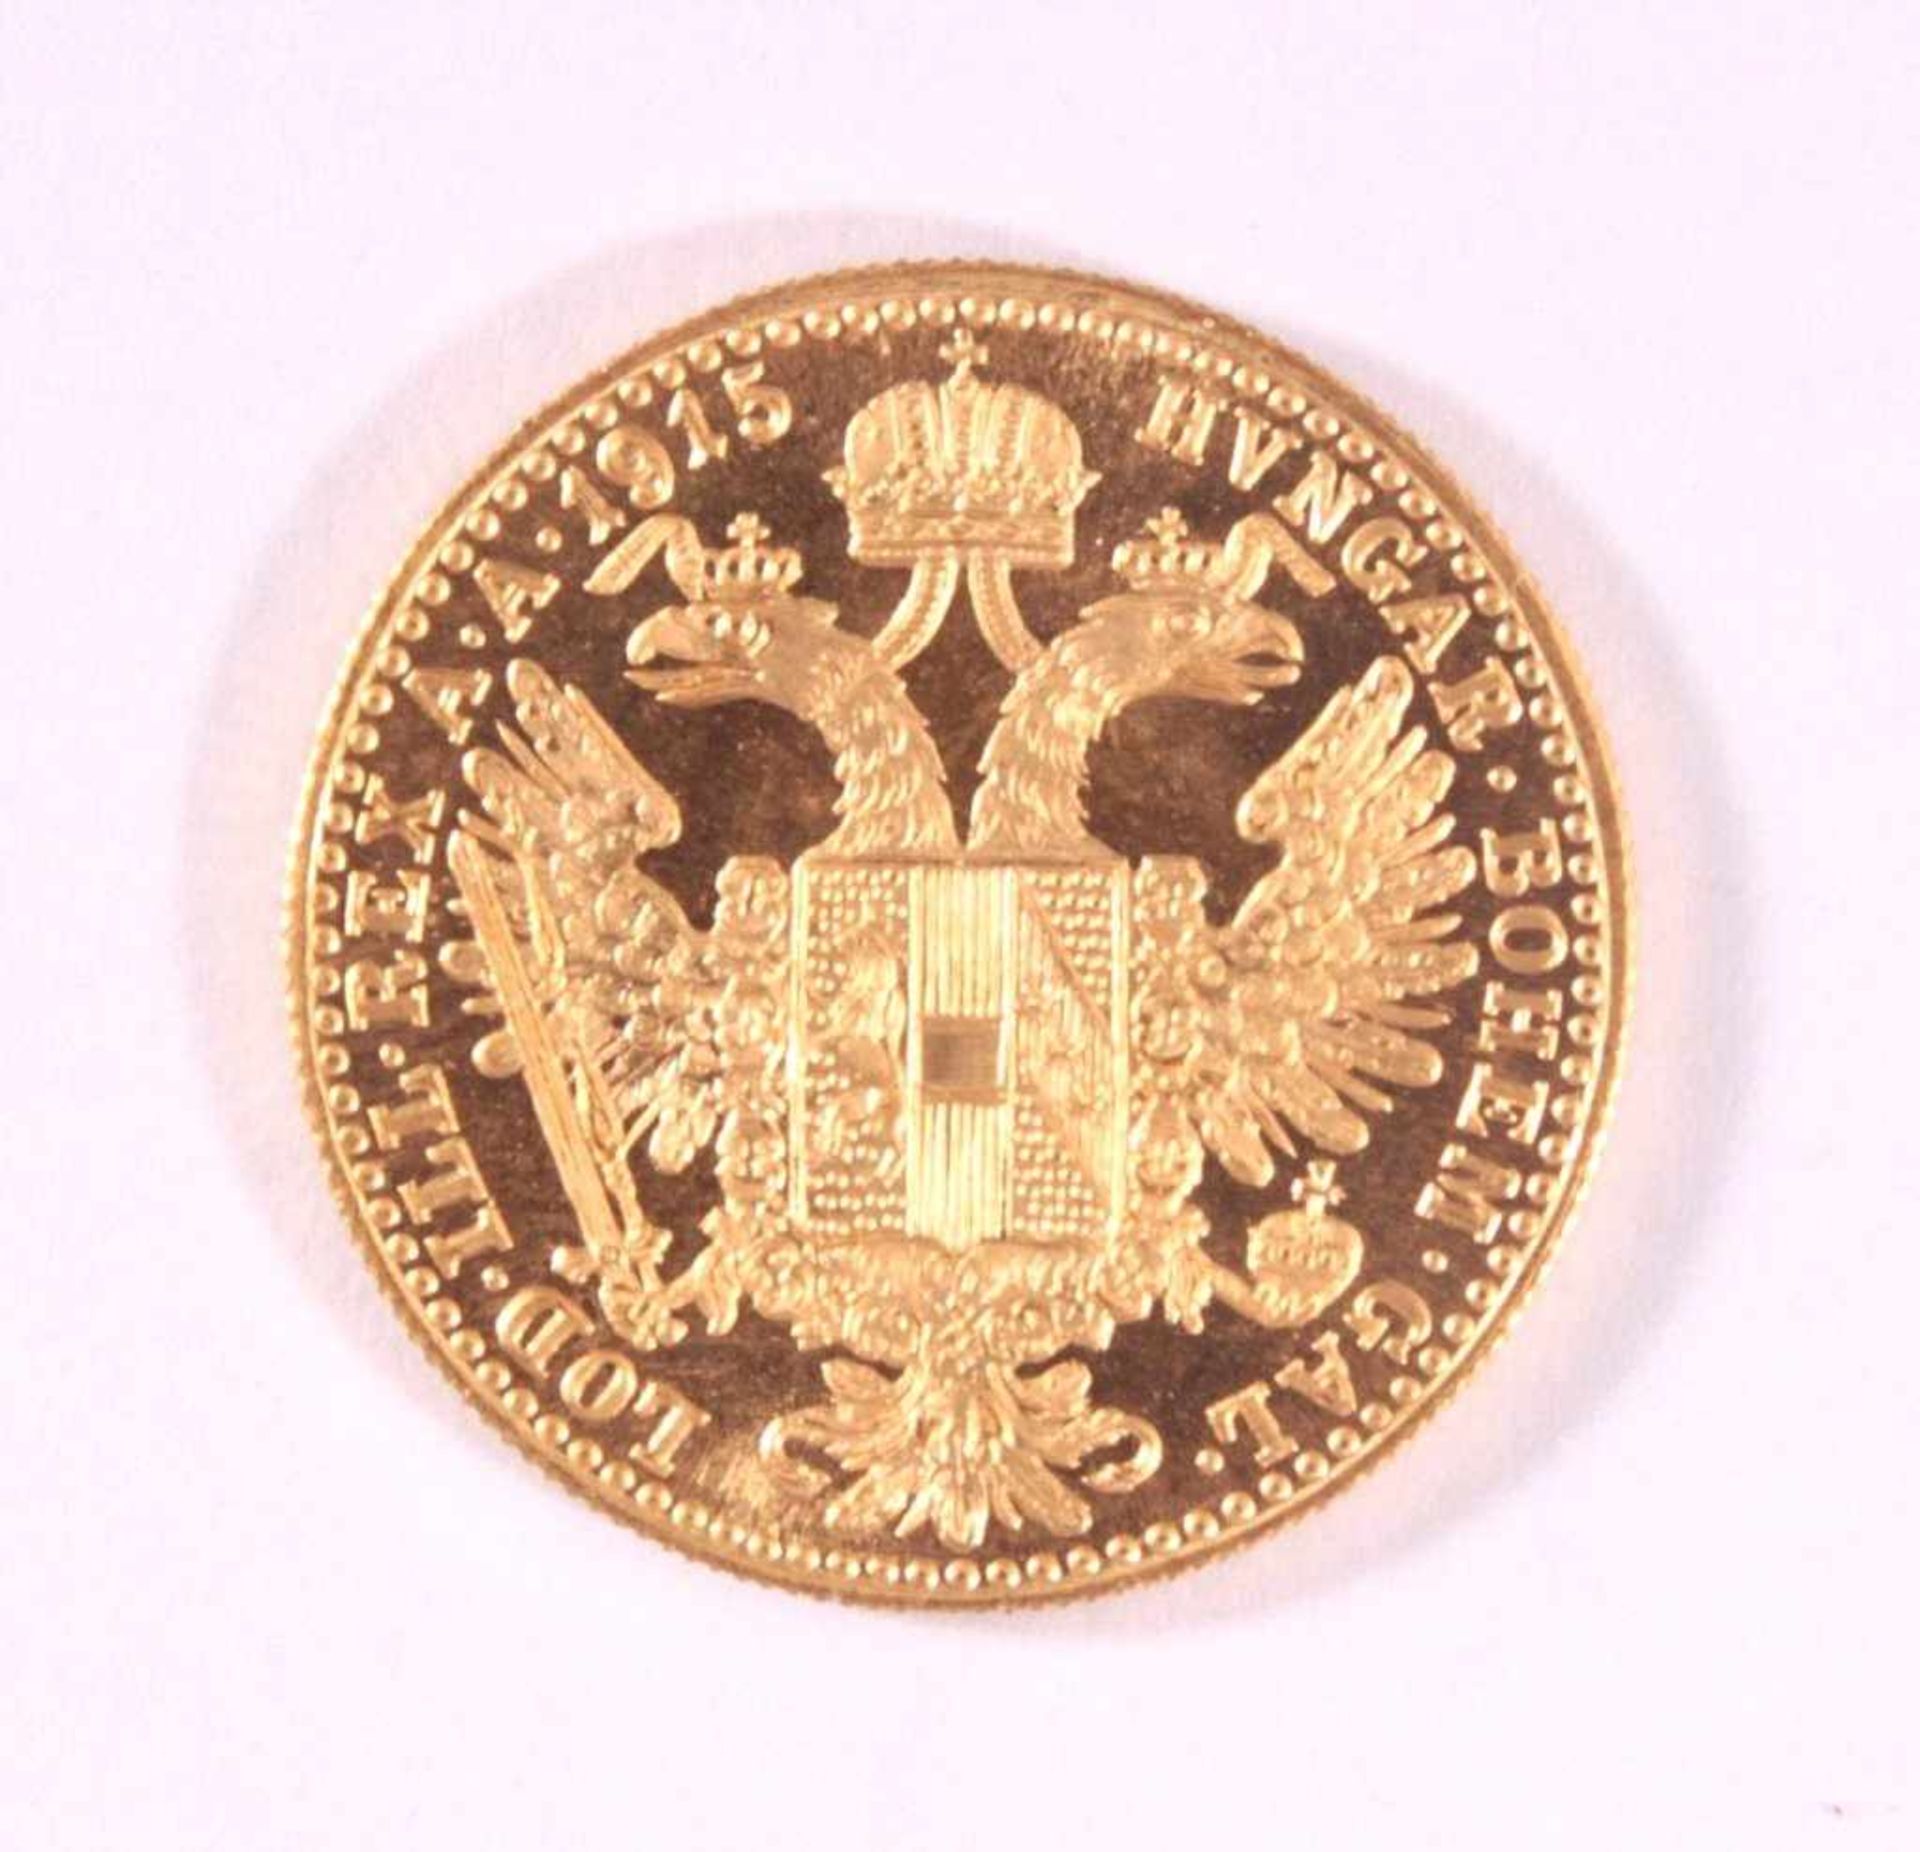 1 Golddukat Kaiser Franz Joseph 1915986er Gold, ca. D-2,0, Gewicht ca. 3,49g - Bild 2 aus 2